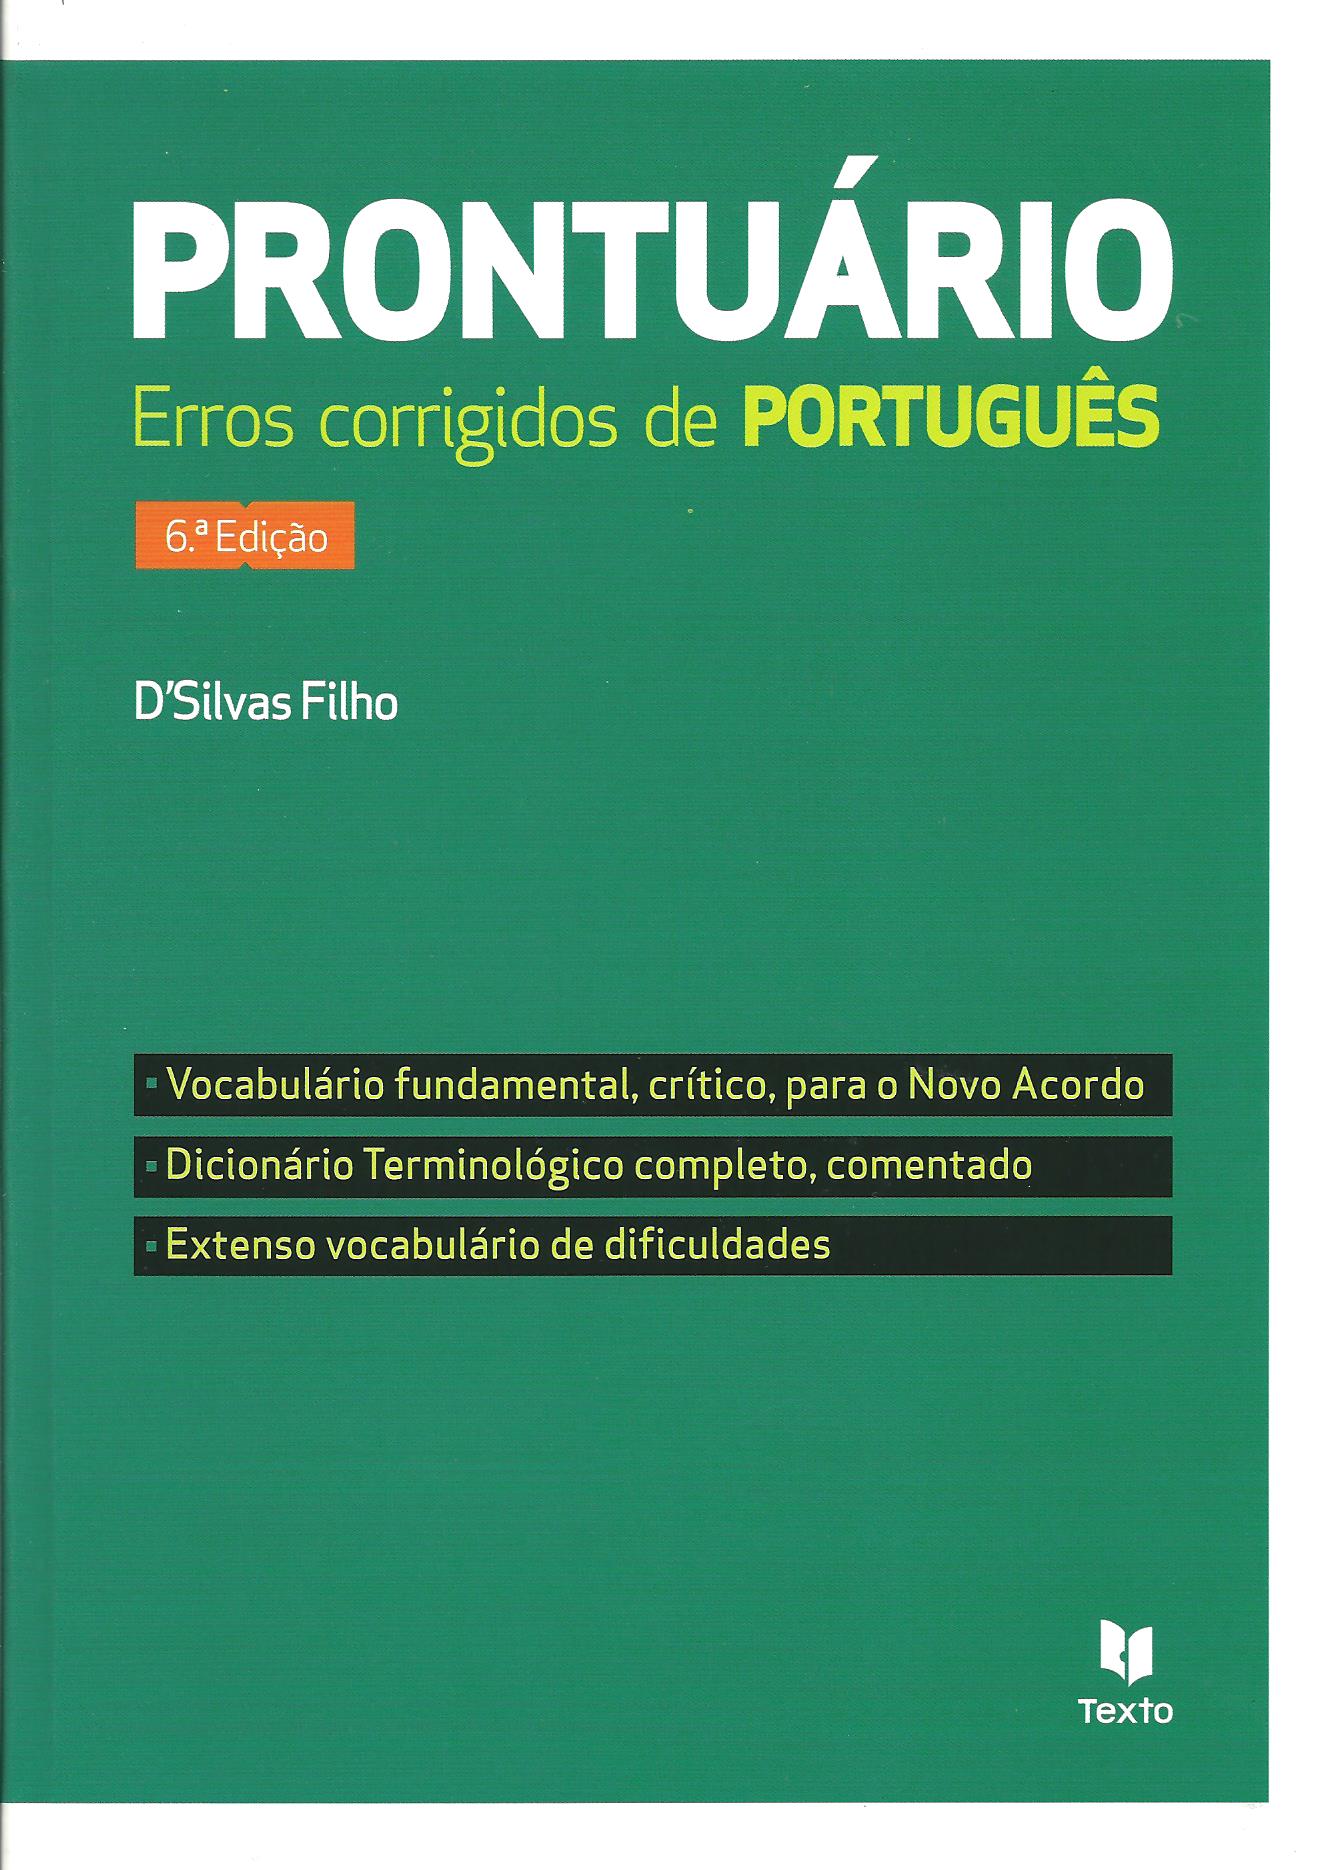 Português na 1.ª pessoa - Ciberdúvidas da Língua Portuguesa